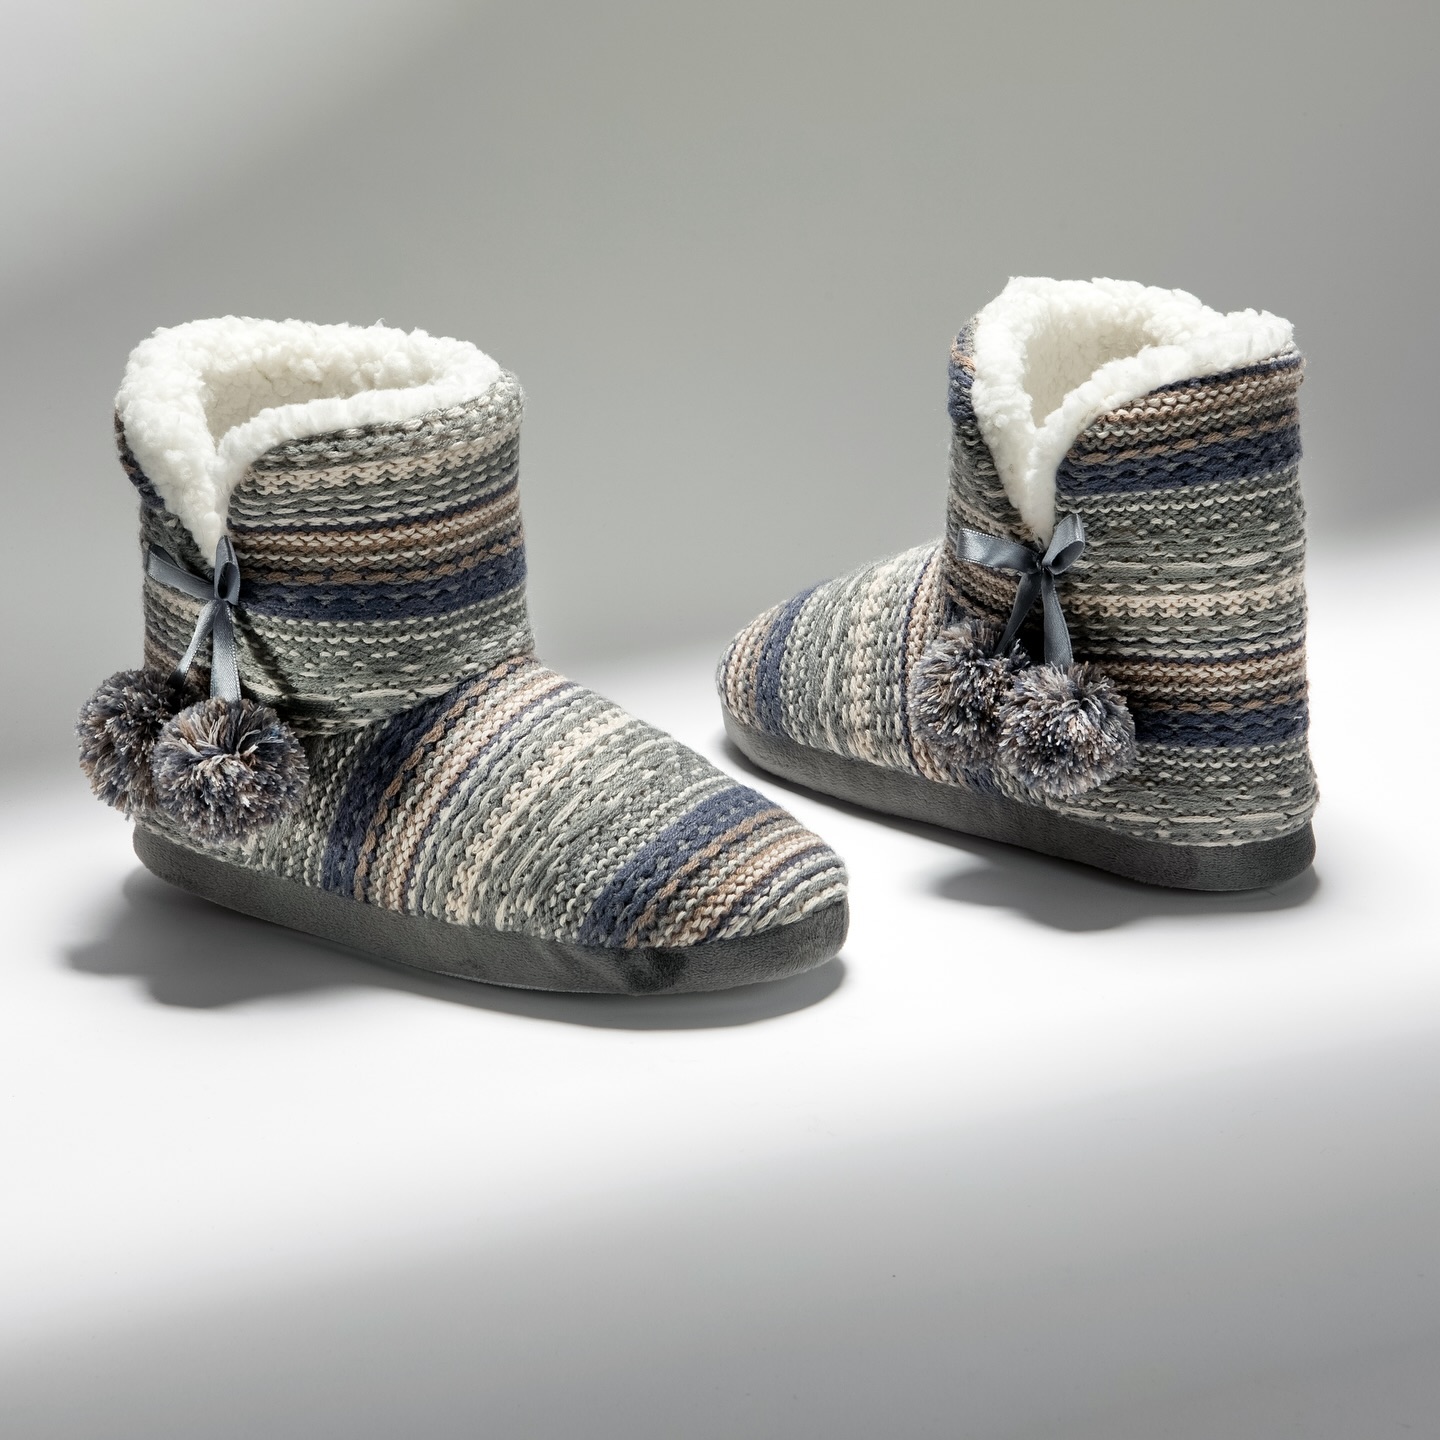 Winter Days At Home 🌧️
סניפי הרשת והאתר פתוחים עבורכם - עם מגוון נעלי בית לחורף לכל המשפחה 🫶🏻
#WalkInGali